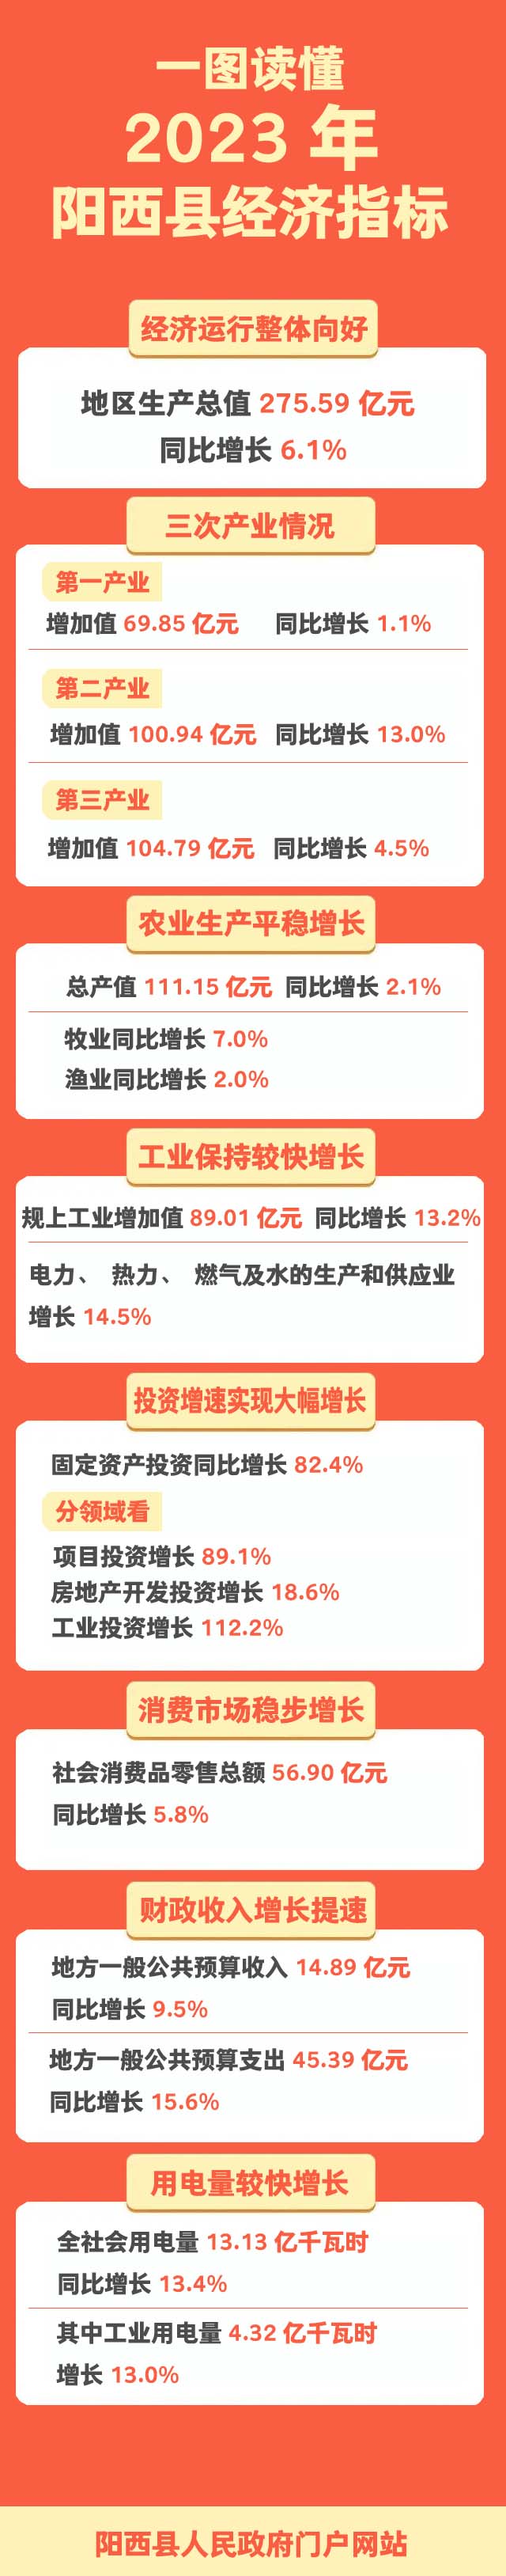 一图读懂2023年阳西县经济指标3 拷贝.jpg